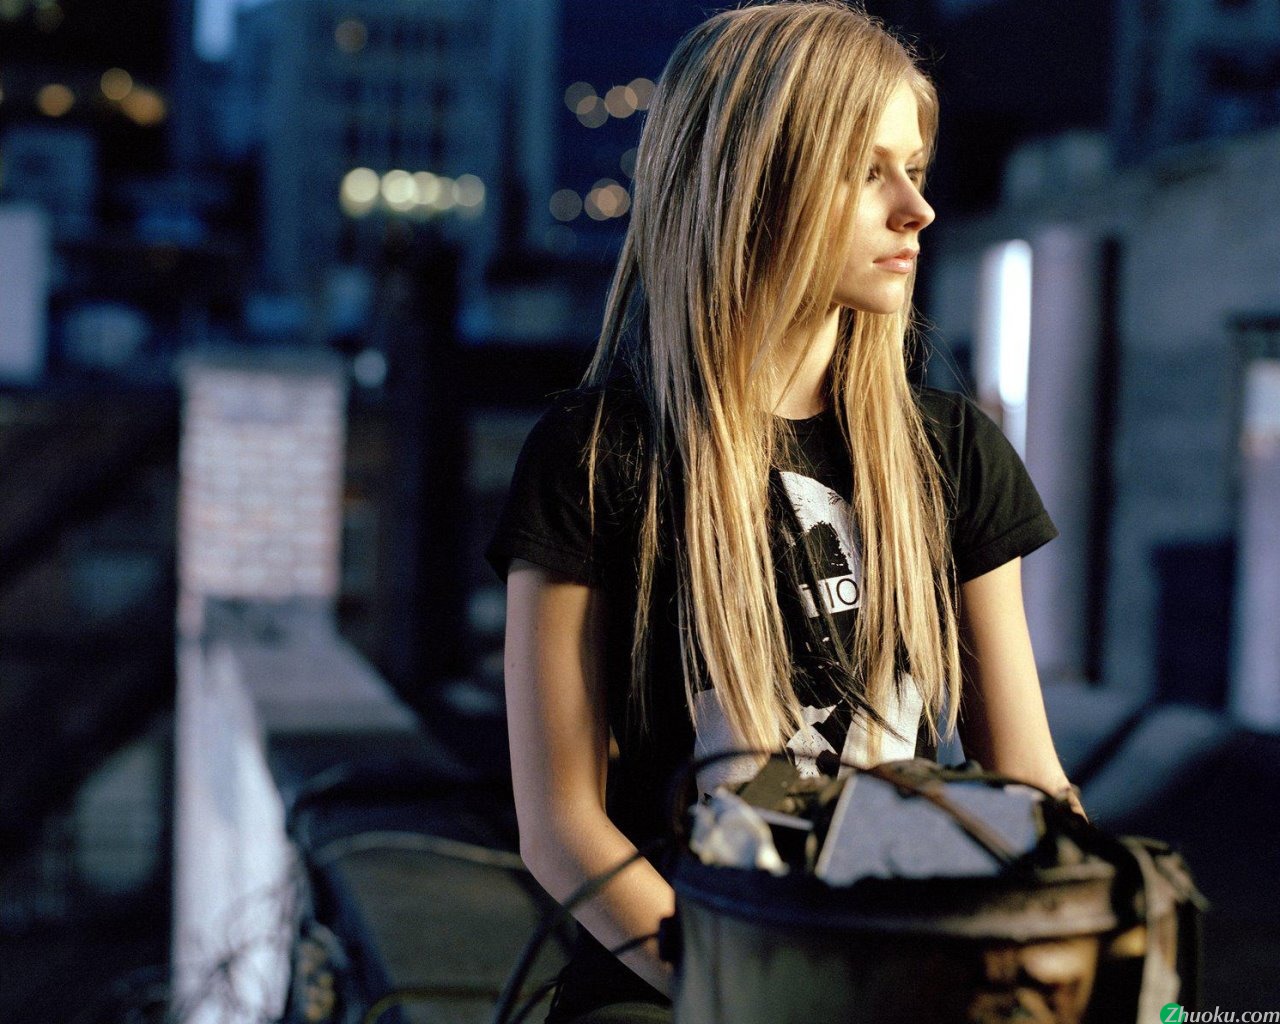 壁纸1280x1024艾薇儿 Avril Lavigne 壁纸70壁纸 艾薇儿 Avril Lavigne壁纸 艾薇儿 Avril Lavigne图片 艾薇儿 Avril Lavigne素材 明星壁纸 明星图库 明星图片素材桌面壁纸